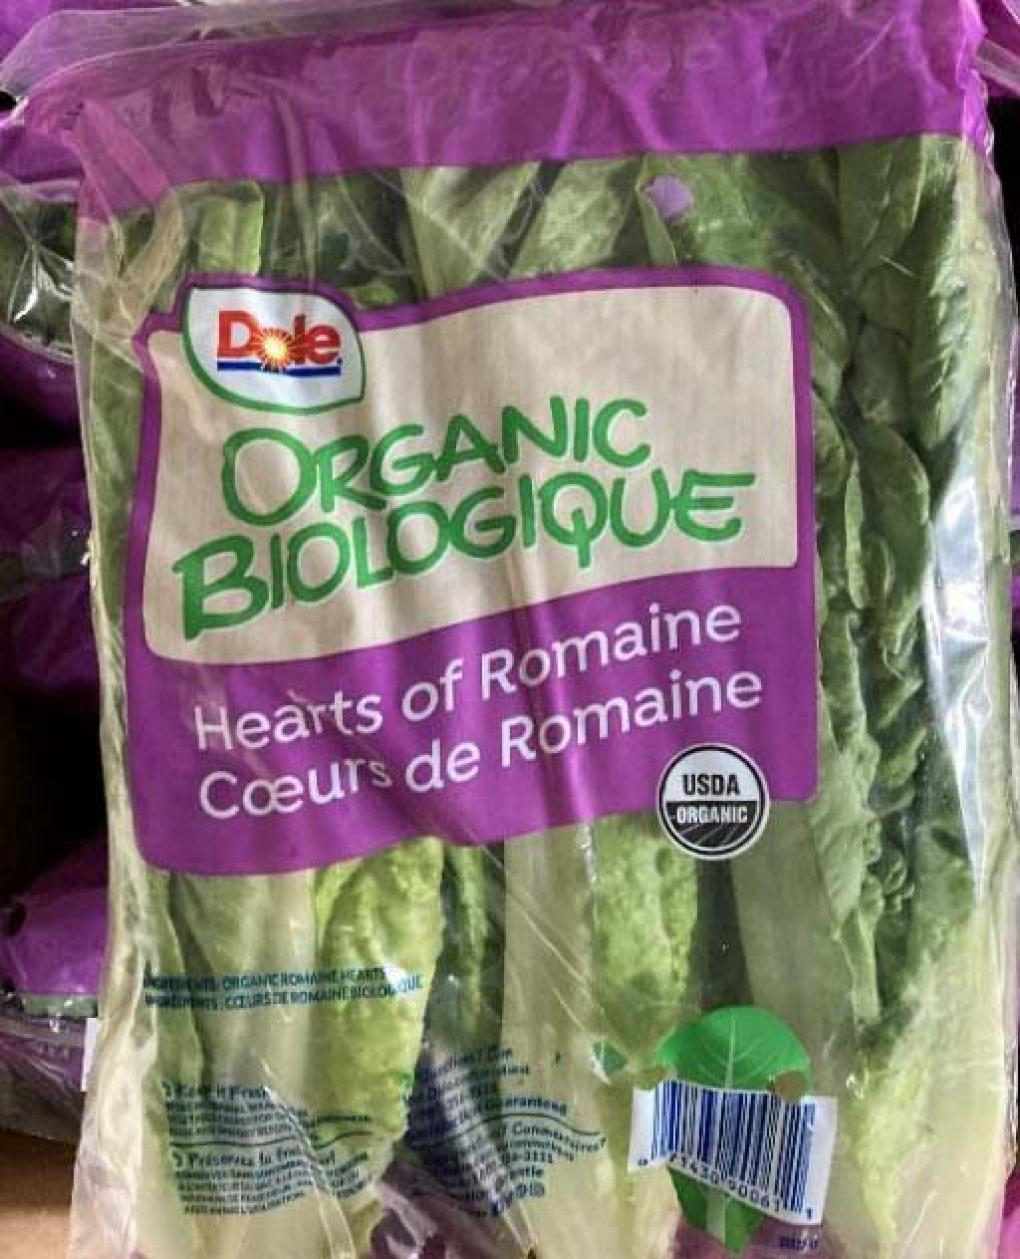 Dole Announces recall of organic romaine hearts due to E. coli